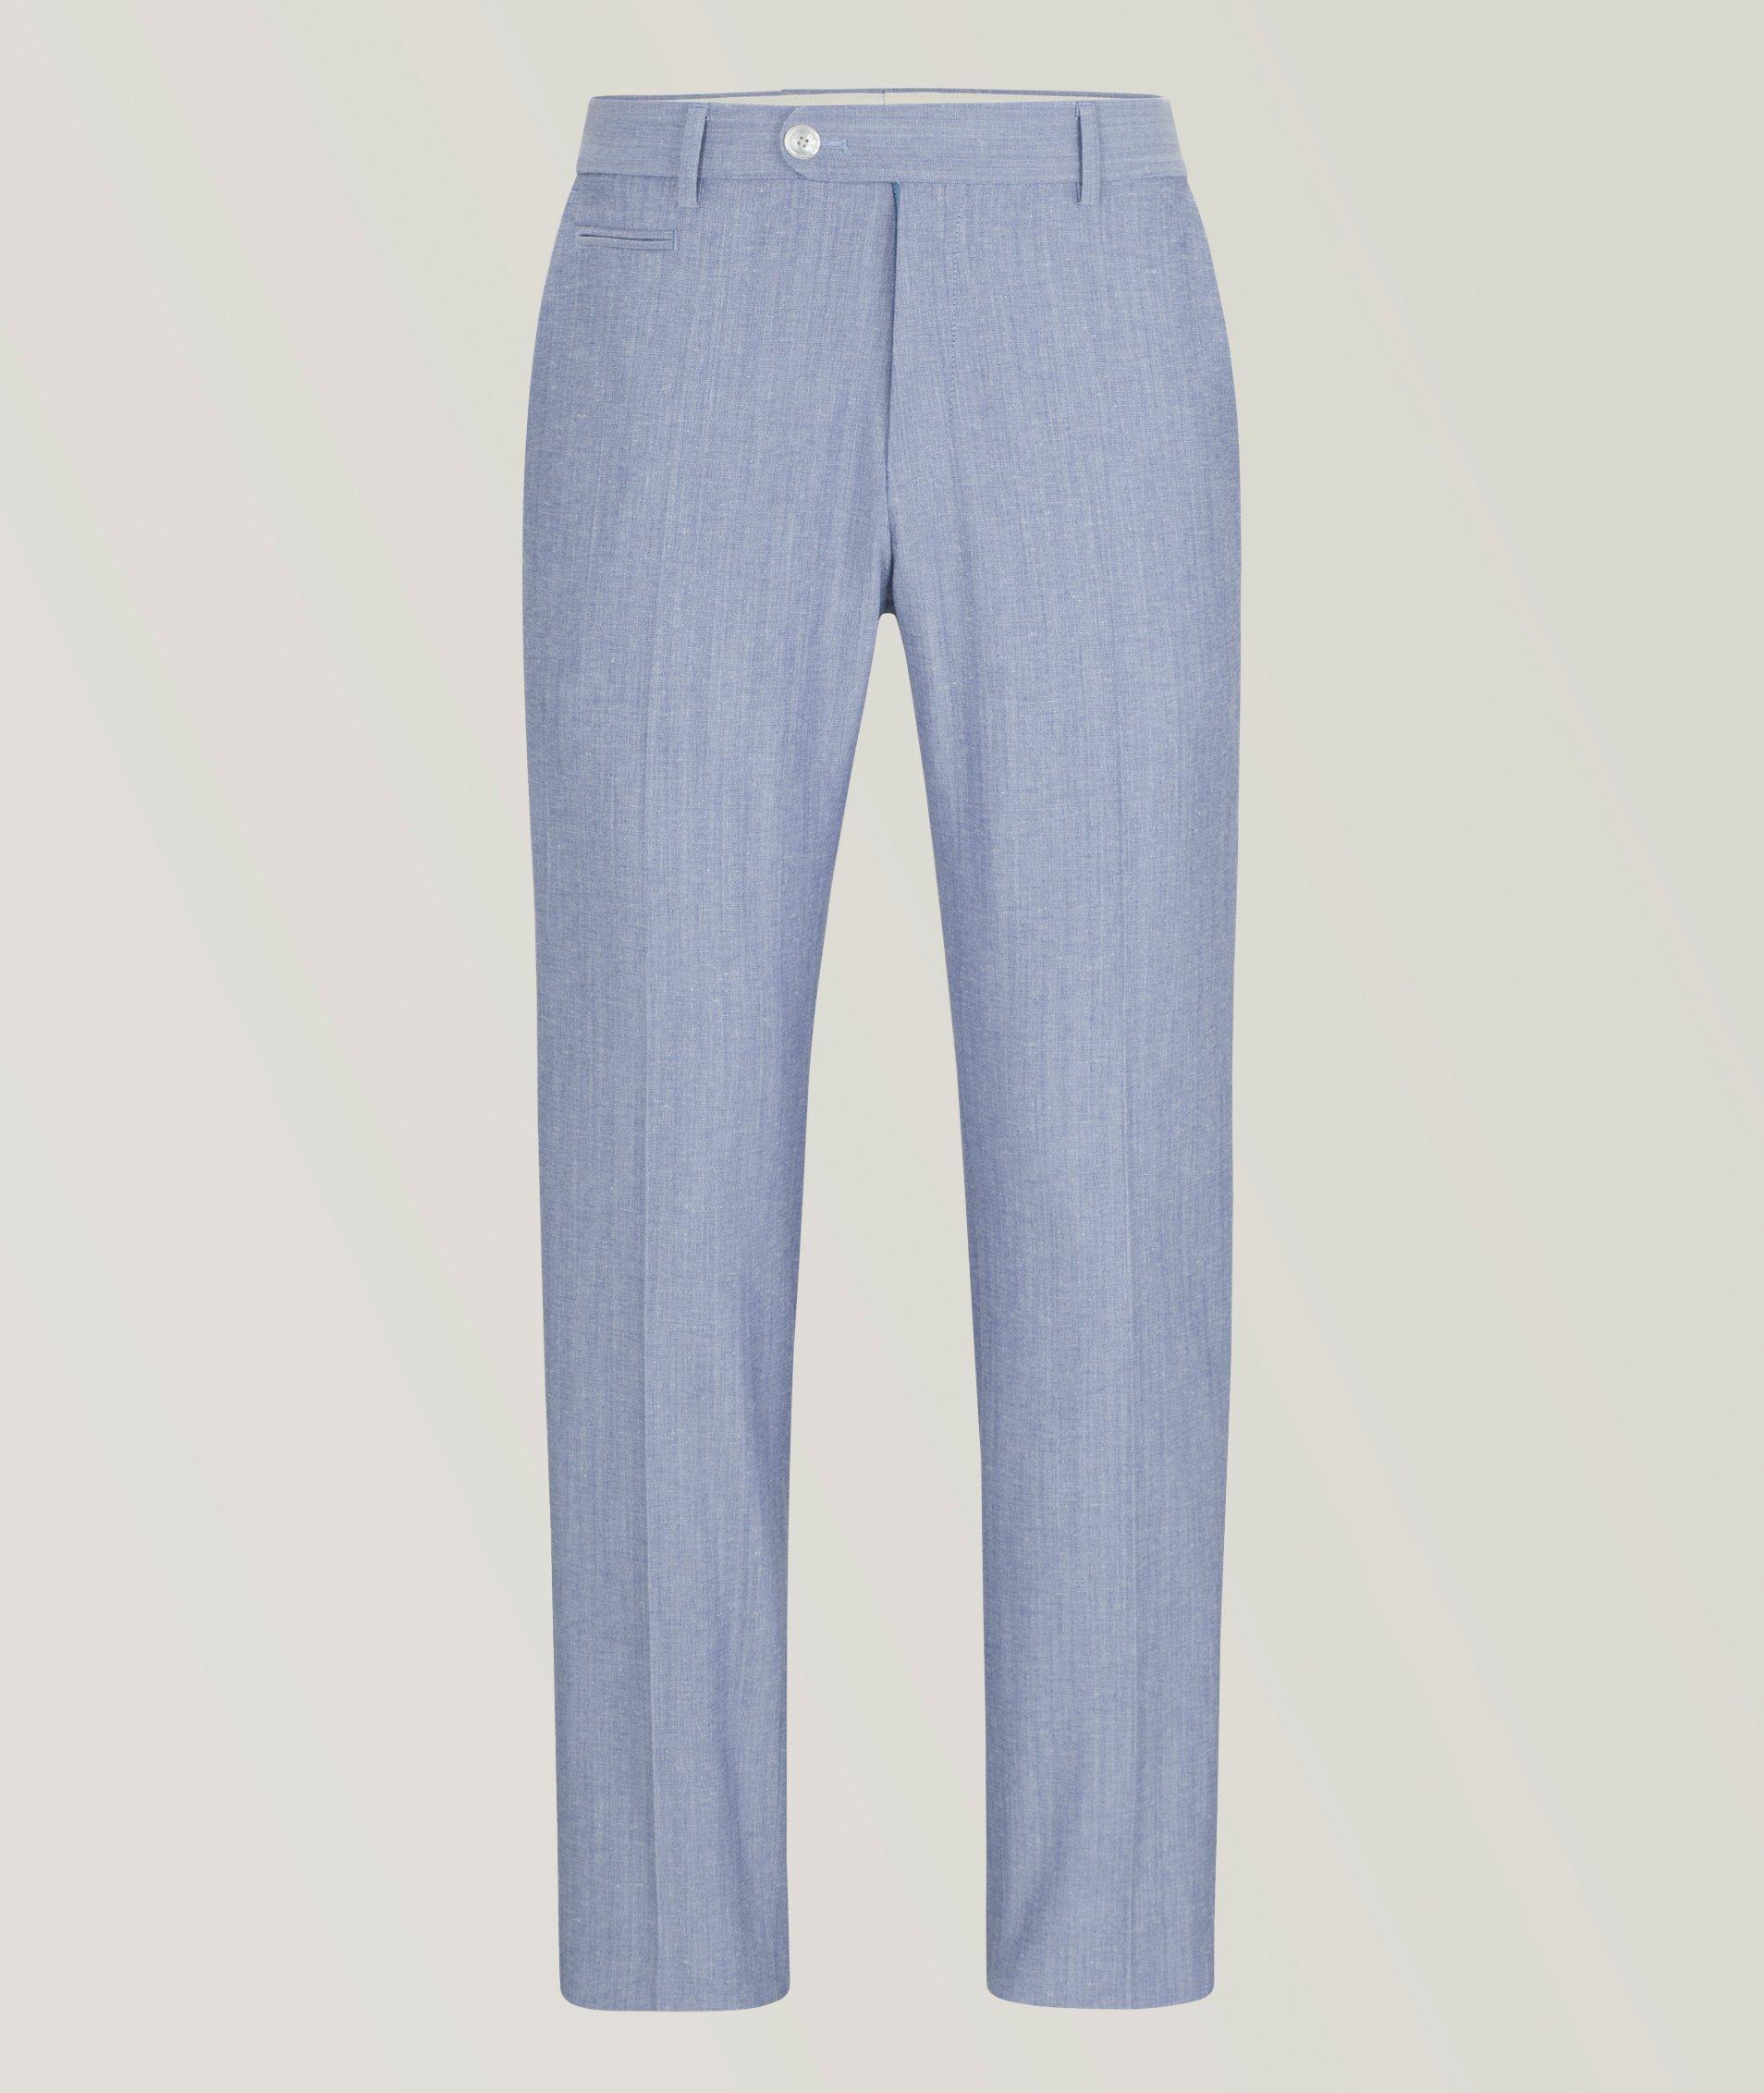 Genius Cotton-Blend Trousers image 0